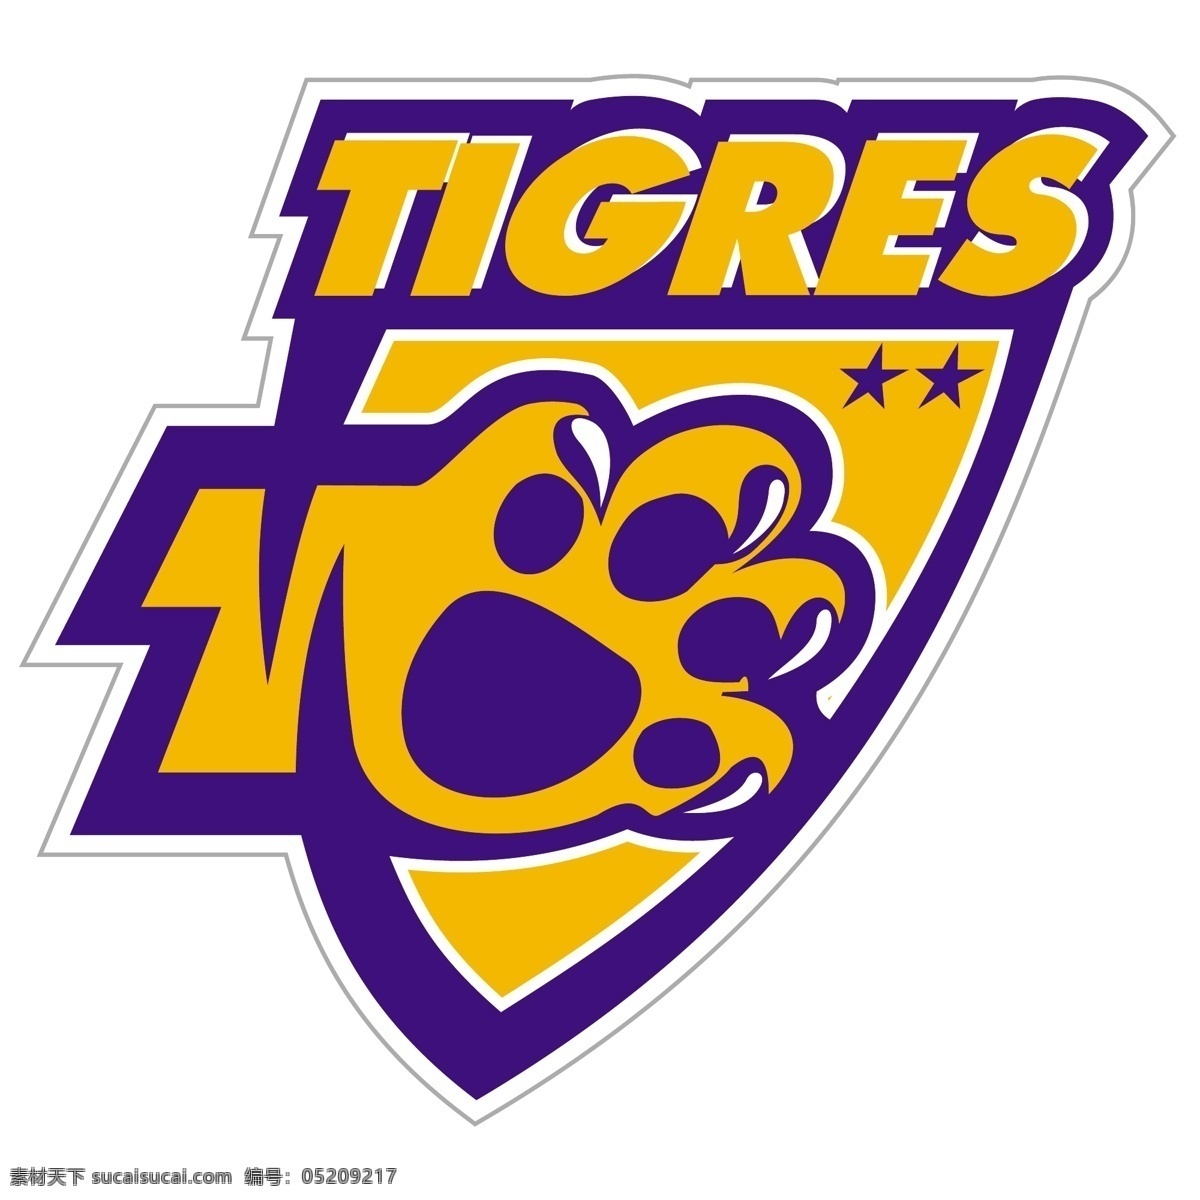 新莱昂 自治 大学 老虎 足球 俱乐部 免费 标志 psd源文件 logo设计